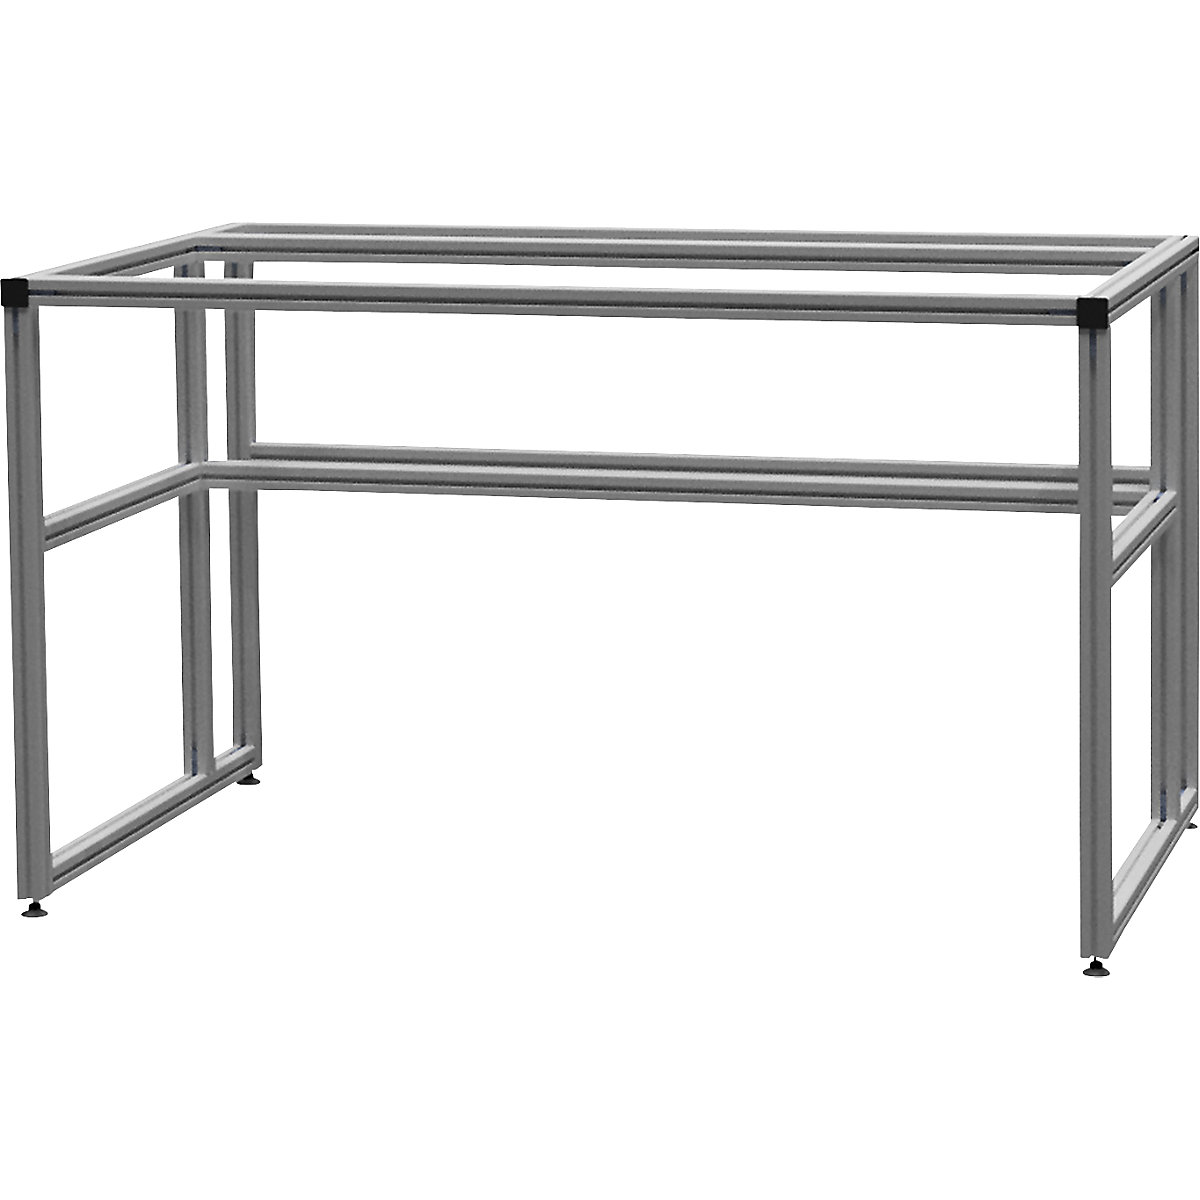 Stół warsztatowy aluminiowy workalu®, szkielet podstawowy – bedrunka hirth